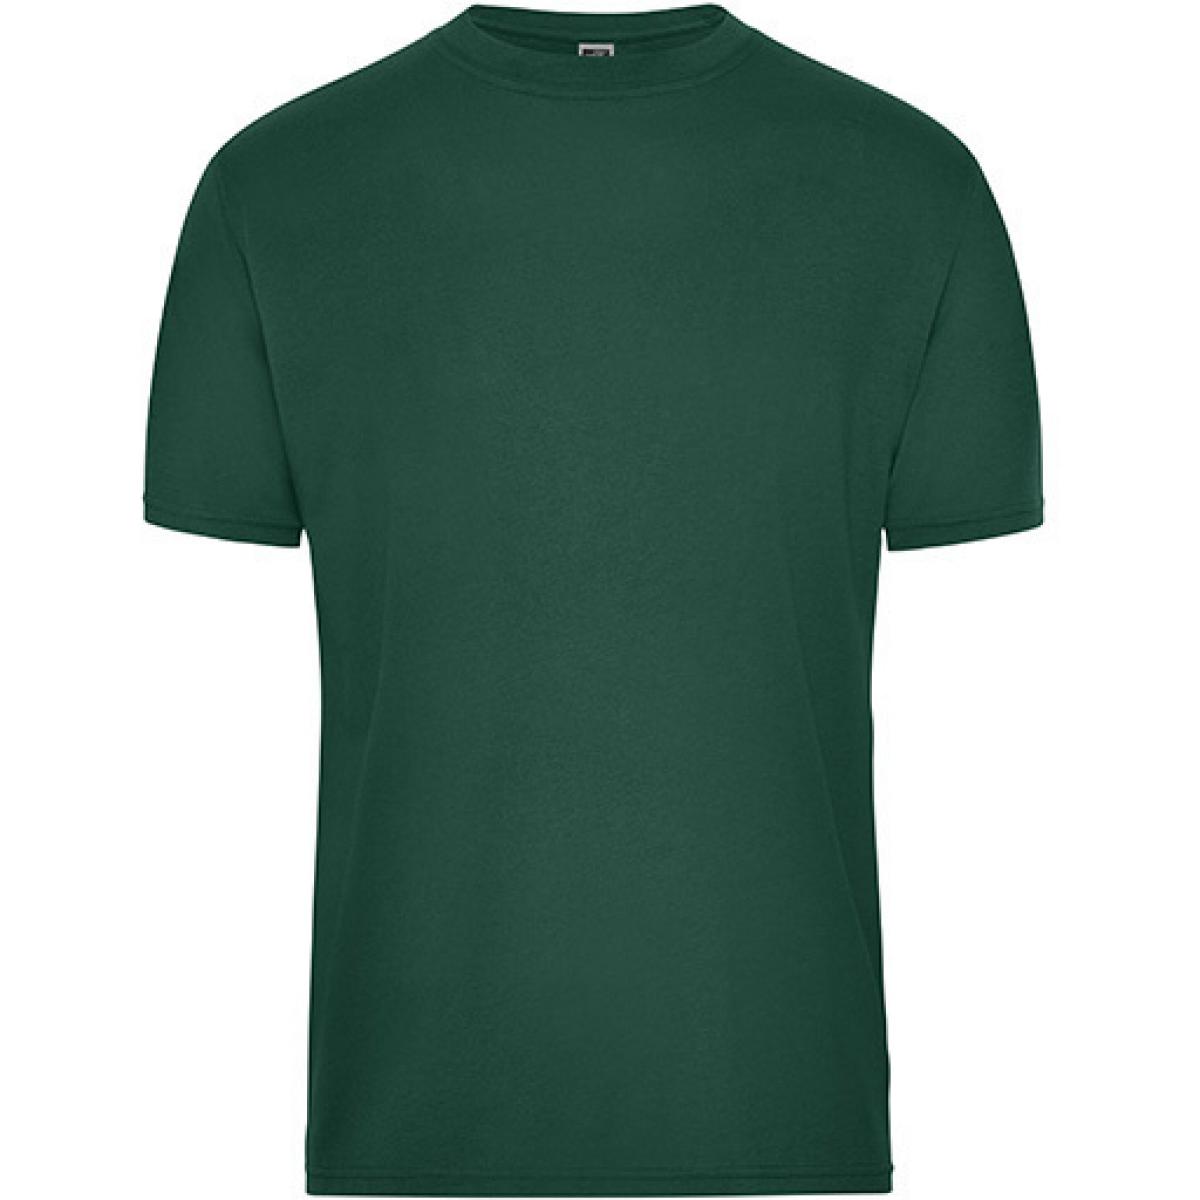 Hersteller: James+Nicholson Herstellernummer: JN1808 Artikelbezeichnung: Men‘s BIO Workwear T-Shirt, Waschbar bis 60 °C Farbe: Dark Green